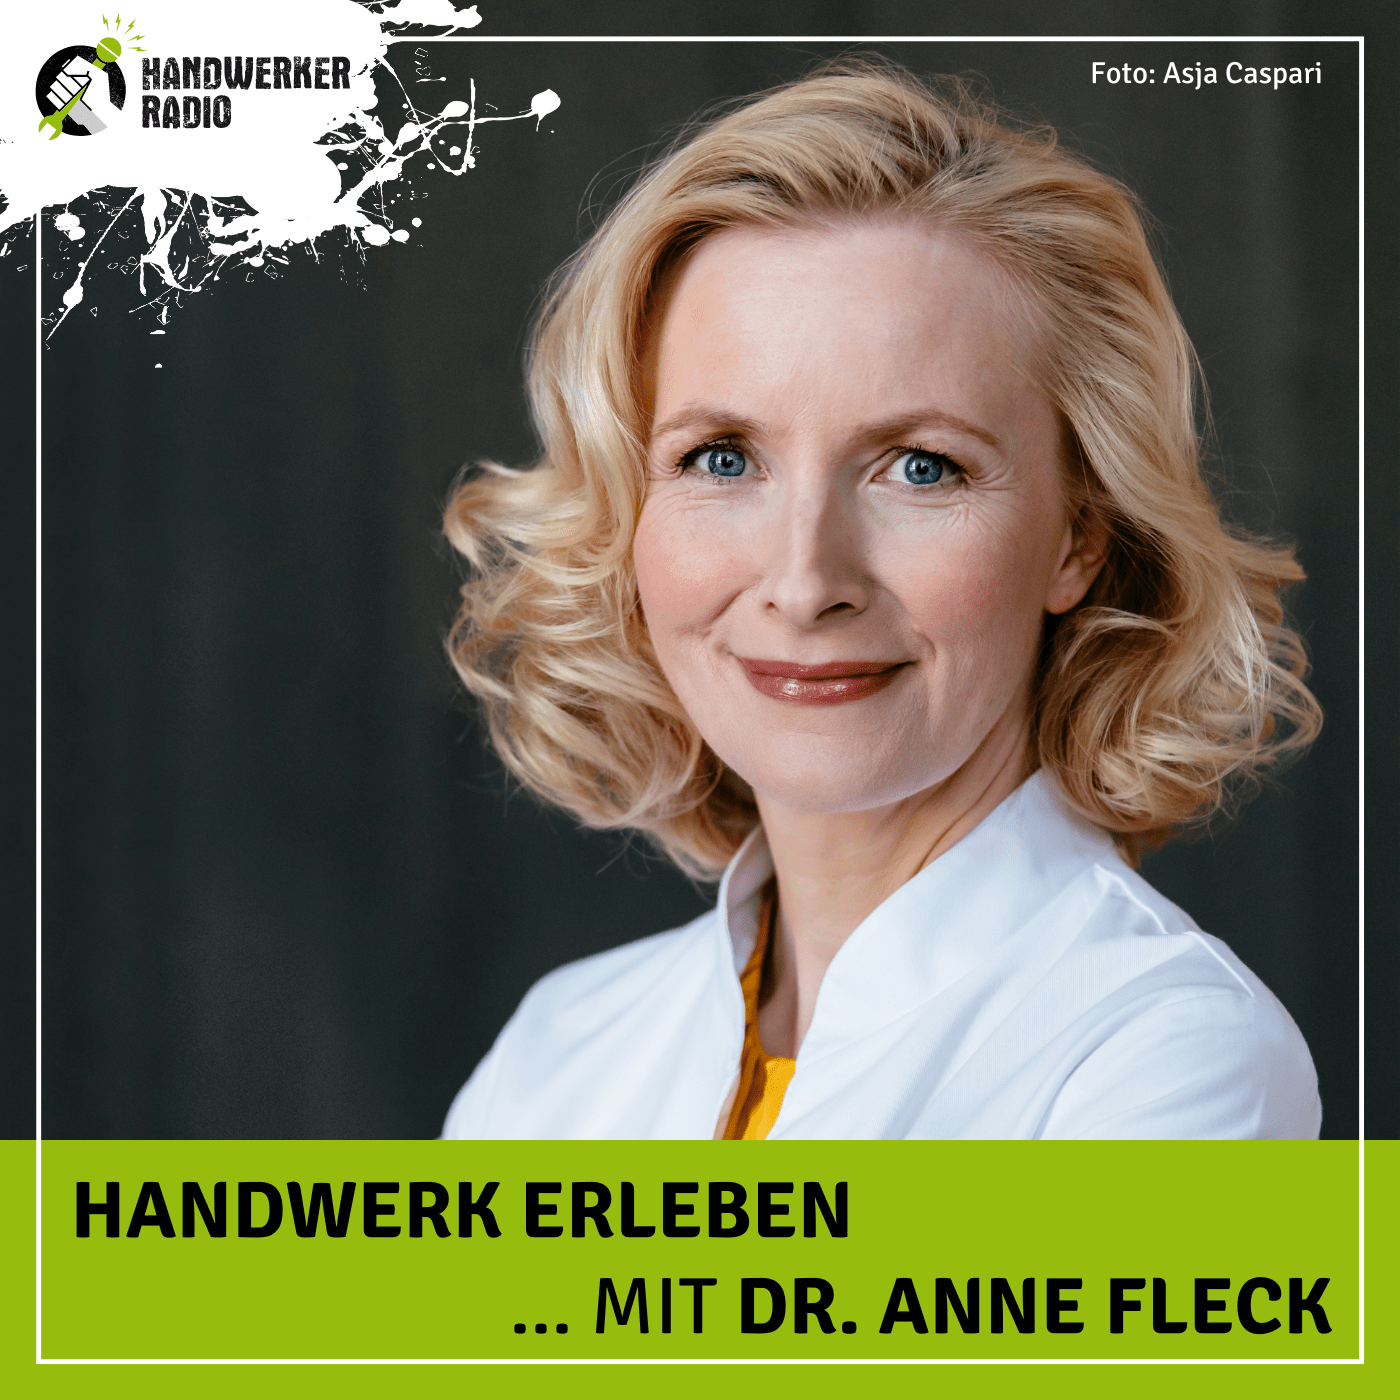 #41 Dr. Anne Fleck, welche Rolle spielt die Ernährung für die Gesundheit im Handwerk?